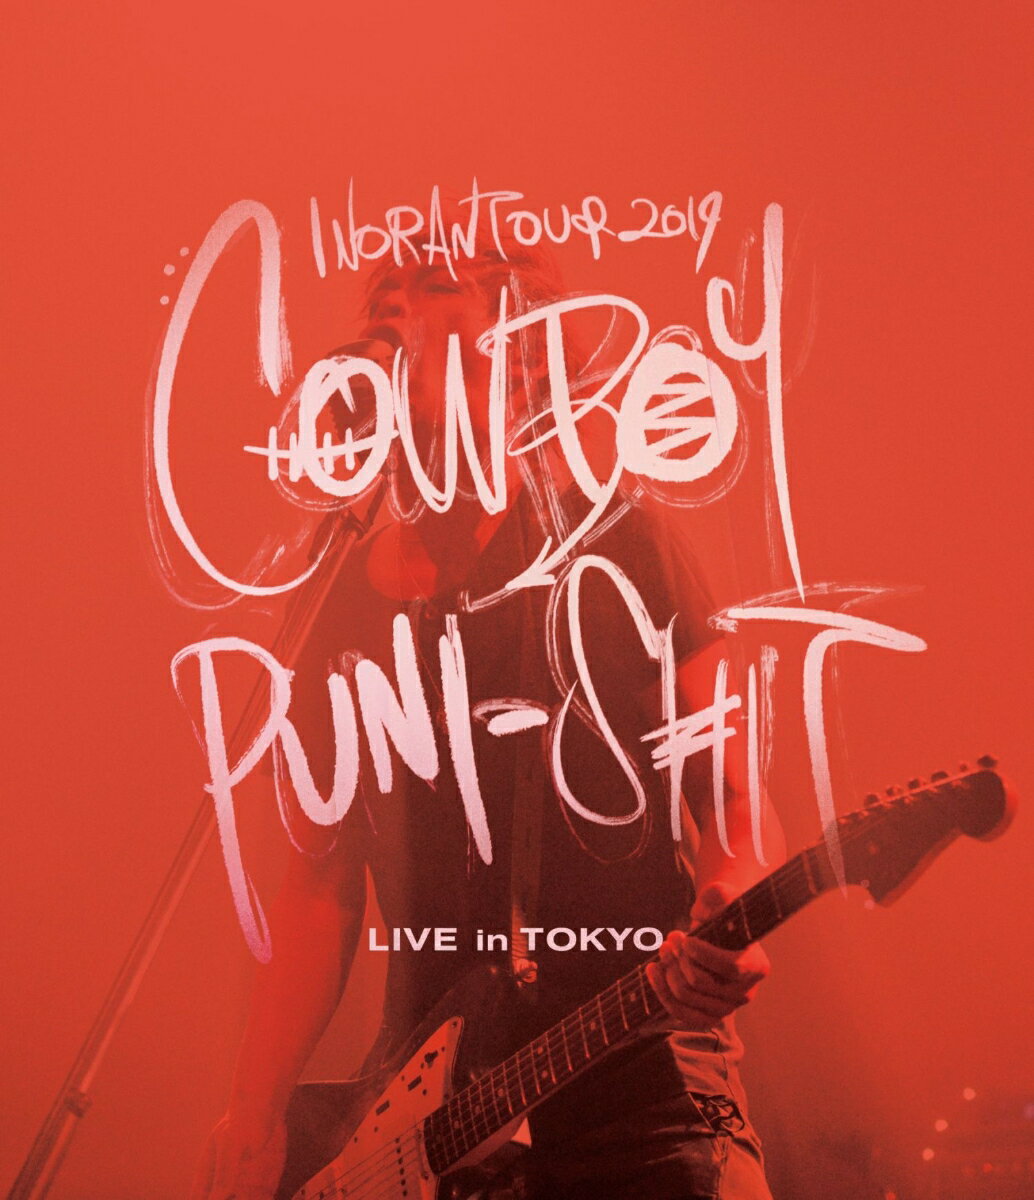 INORAN TOUR 2019 COWBOY PUNI-SHIT LIVE in TOKYO【Blu-ray】 INORAN